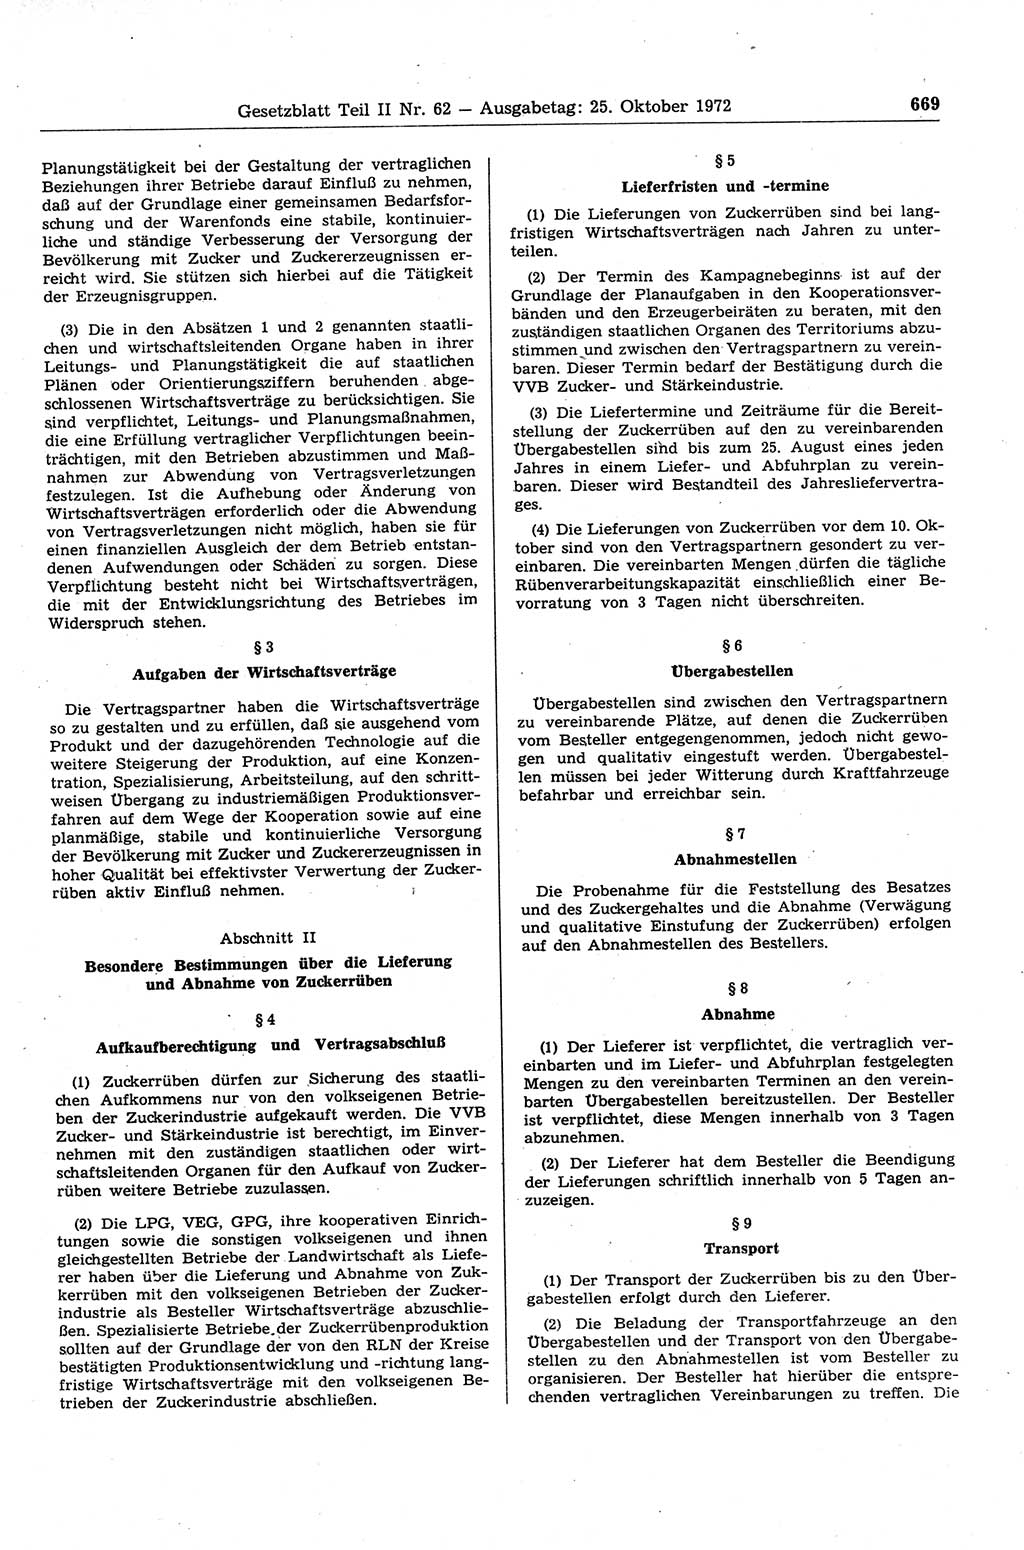 Gesetzblatt (GBl.) der Deutschen Demokratischen Republik (DDR) Teil ⅠⅠ 1972, Seite 669 (GBl. DDR ⅠⅠ 1972, S. 669)